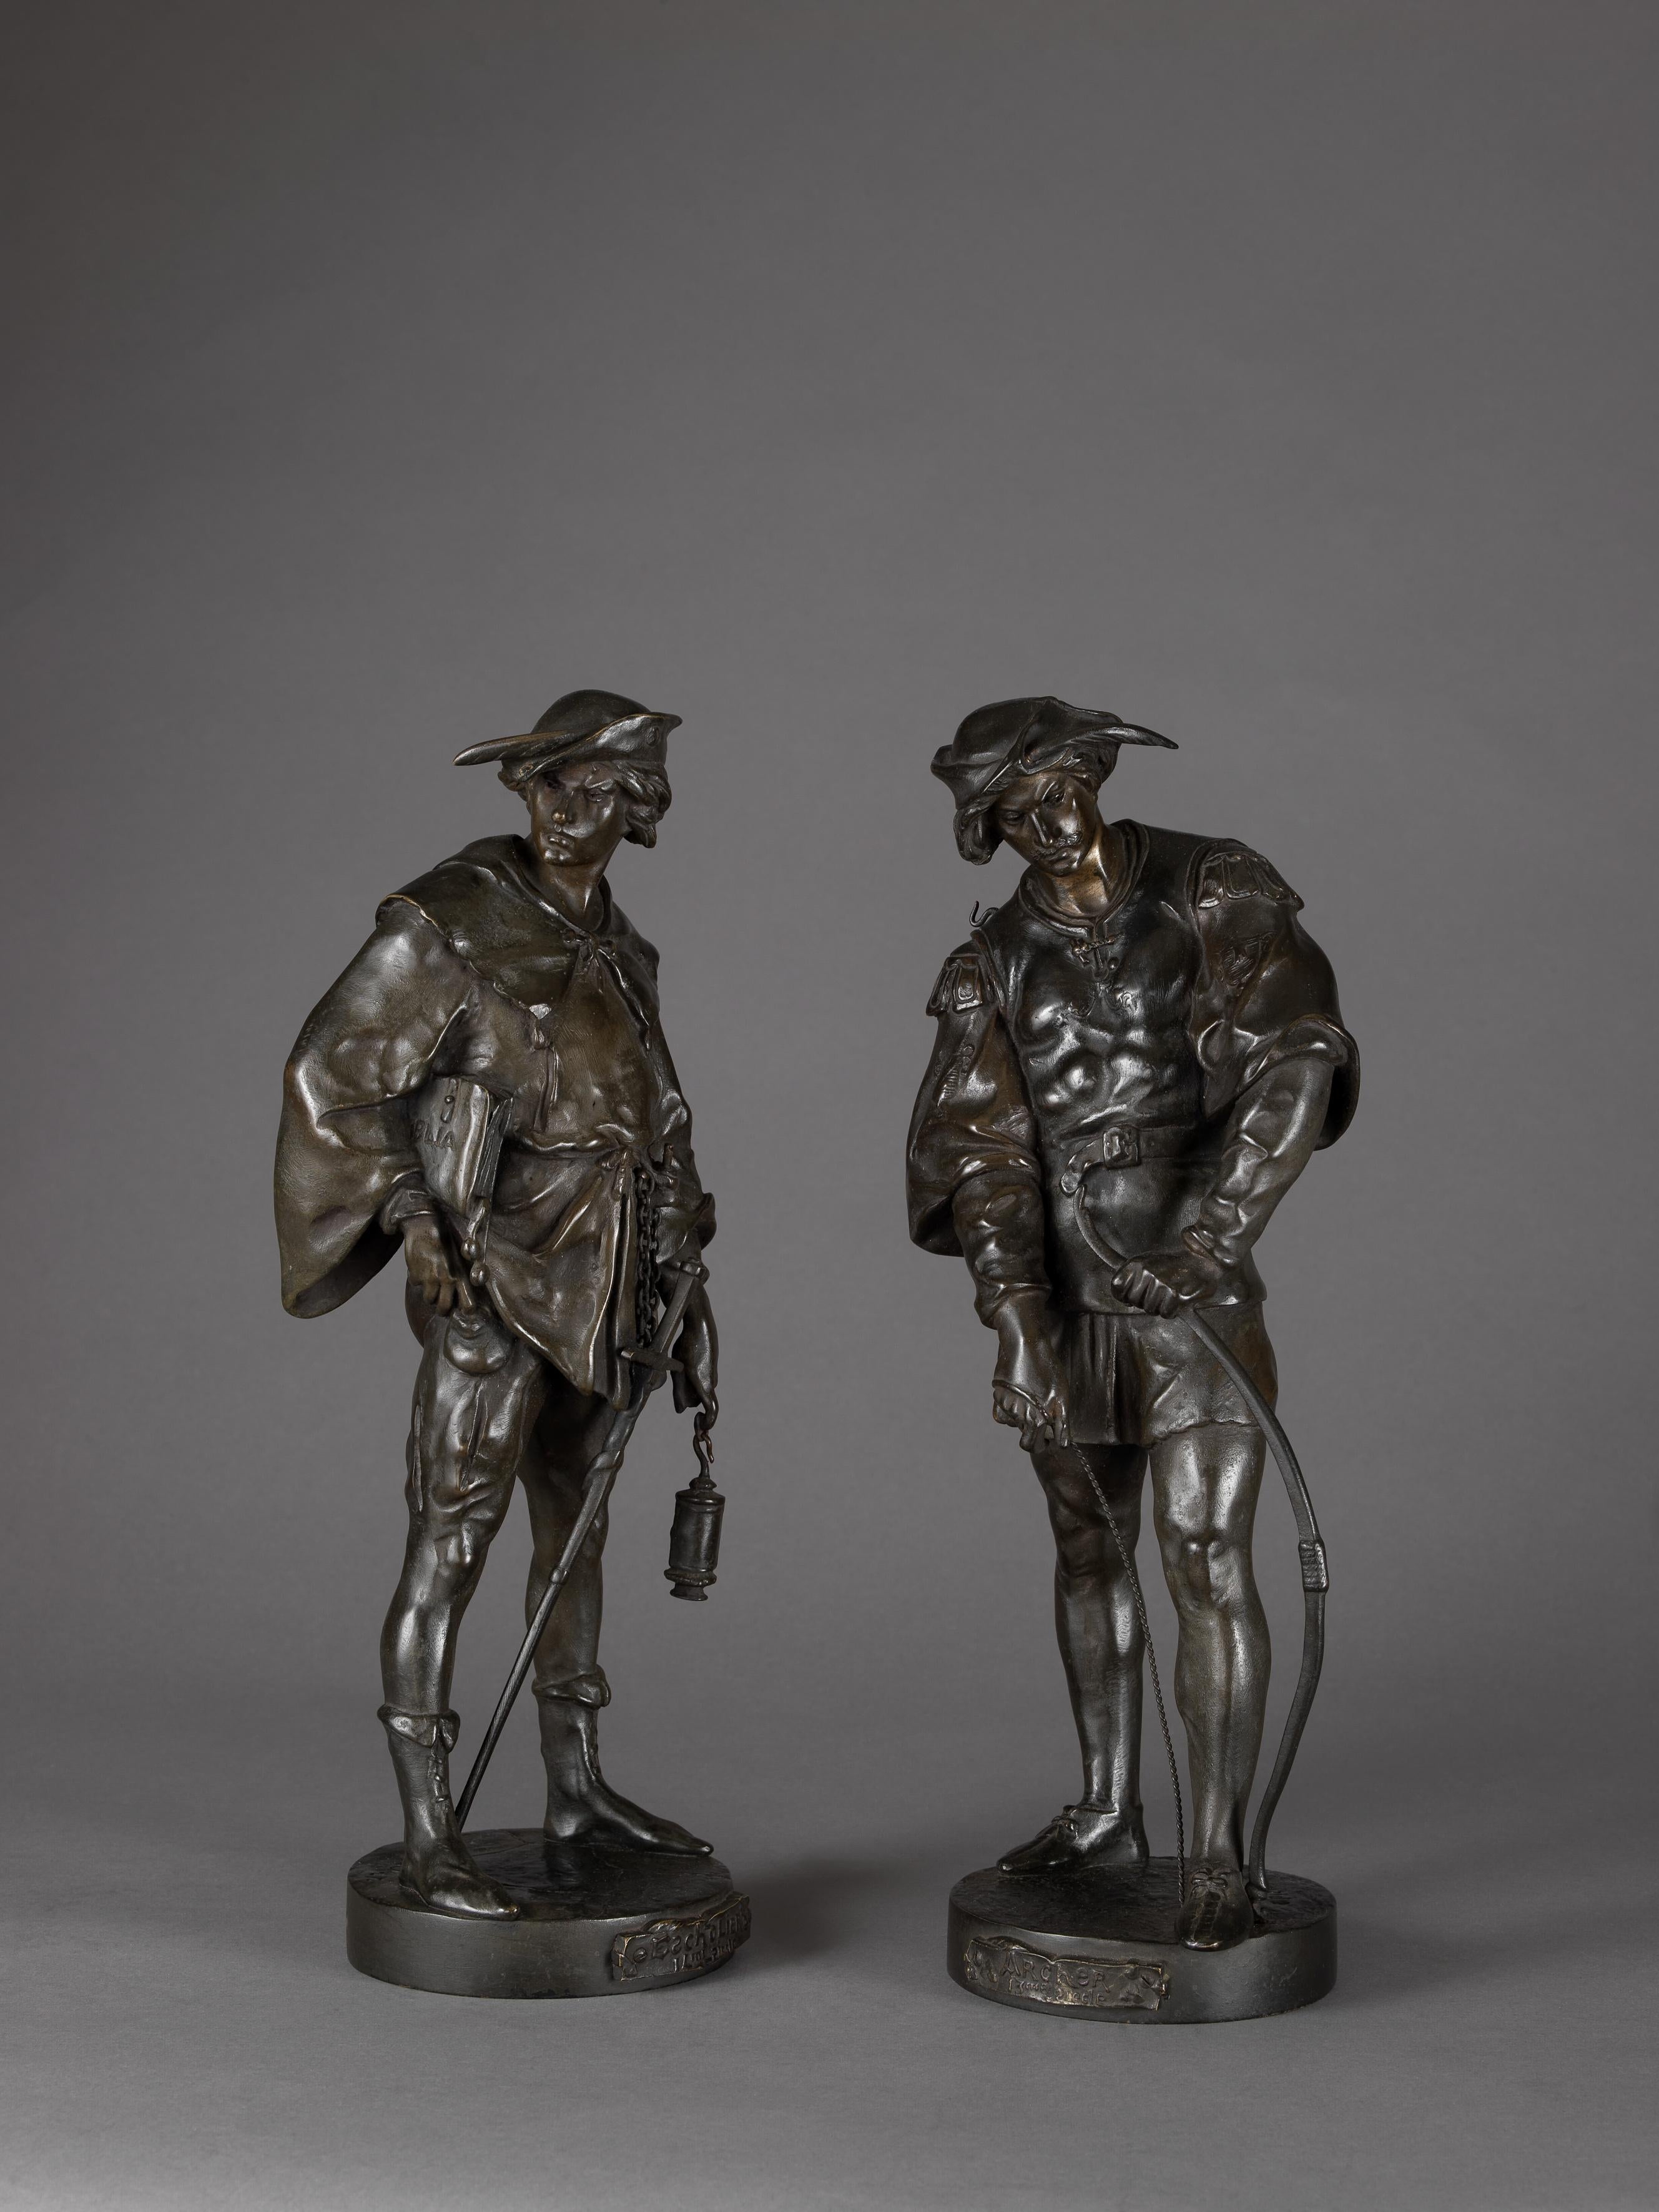 Une belle paire de figures en bronze patiné représentant un archer et un érudit par Émile Louis Picault.

Français, datant d'environ 1890.

Signature en fonte sur chaque base 'E PICAULT'. 

Cette paire de figurines en bronze représente un